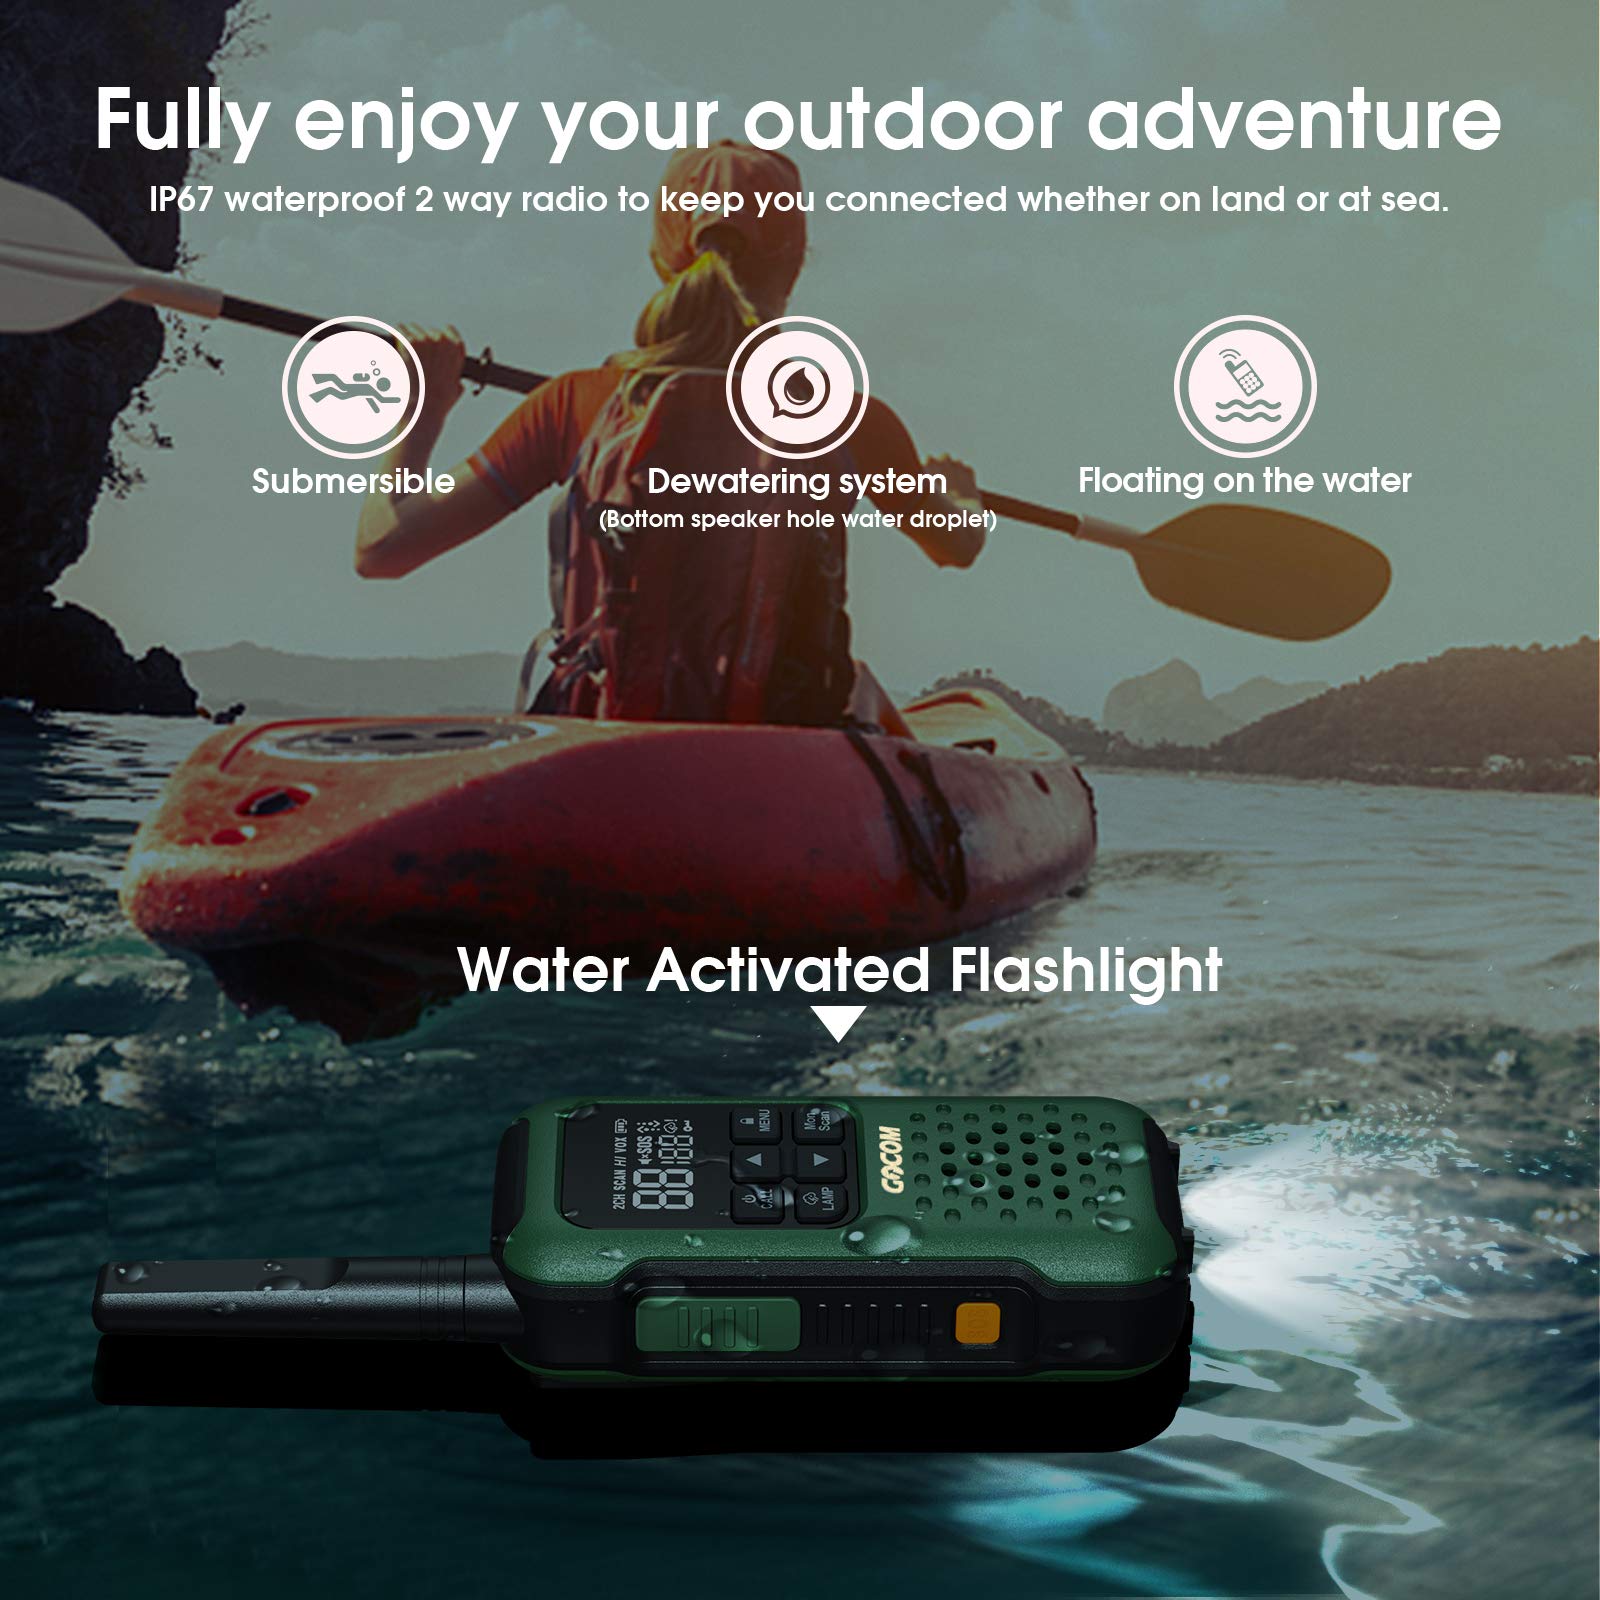 G9 Waterproof Walkie Talkie Long Range, Floating Portable Two Way Radi –  GOCOM Store